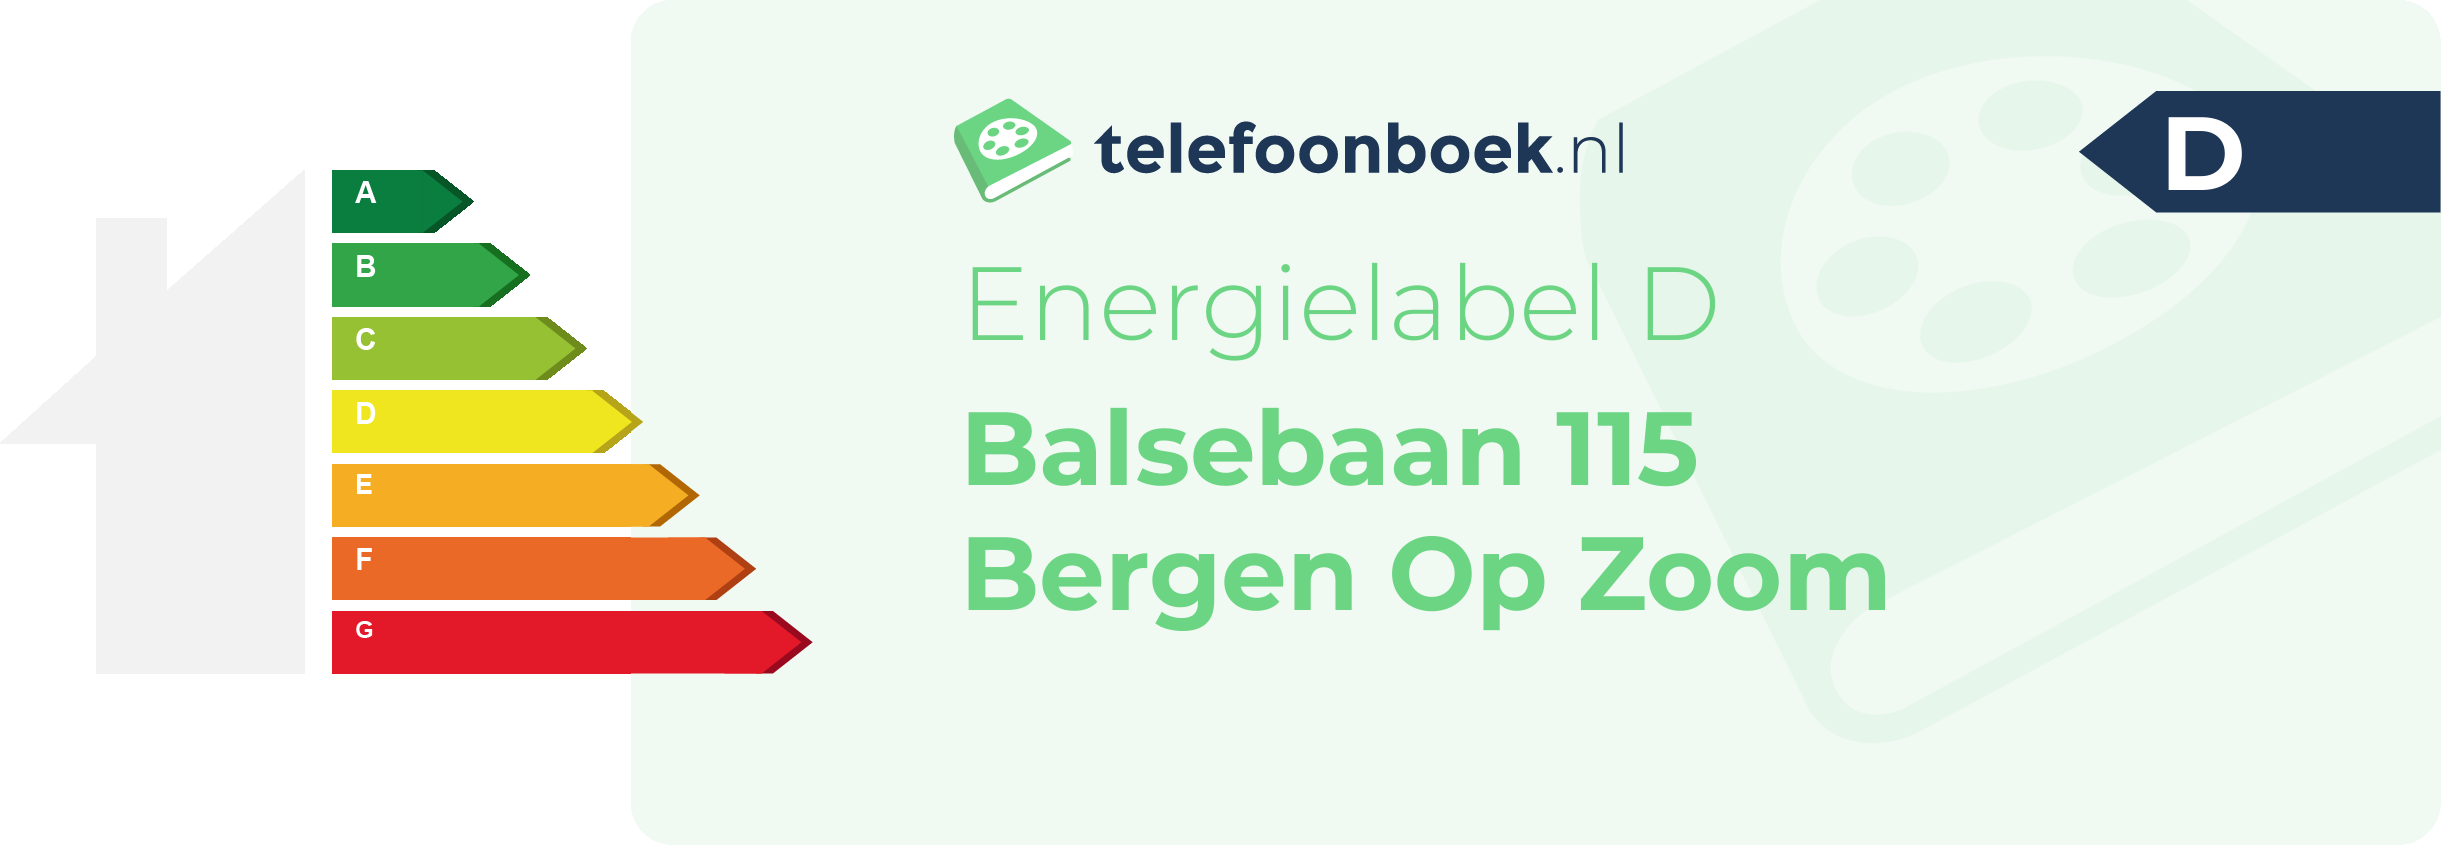 Energielabel Balsebaan 115 Bergen Op Zoom